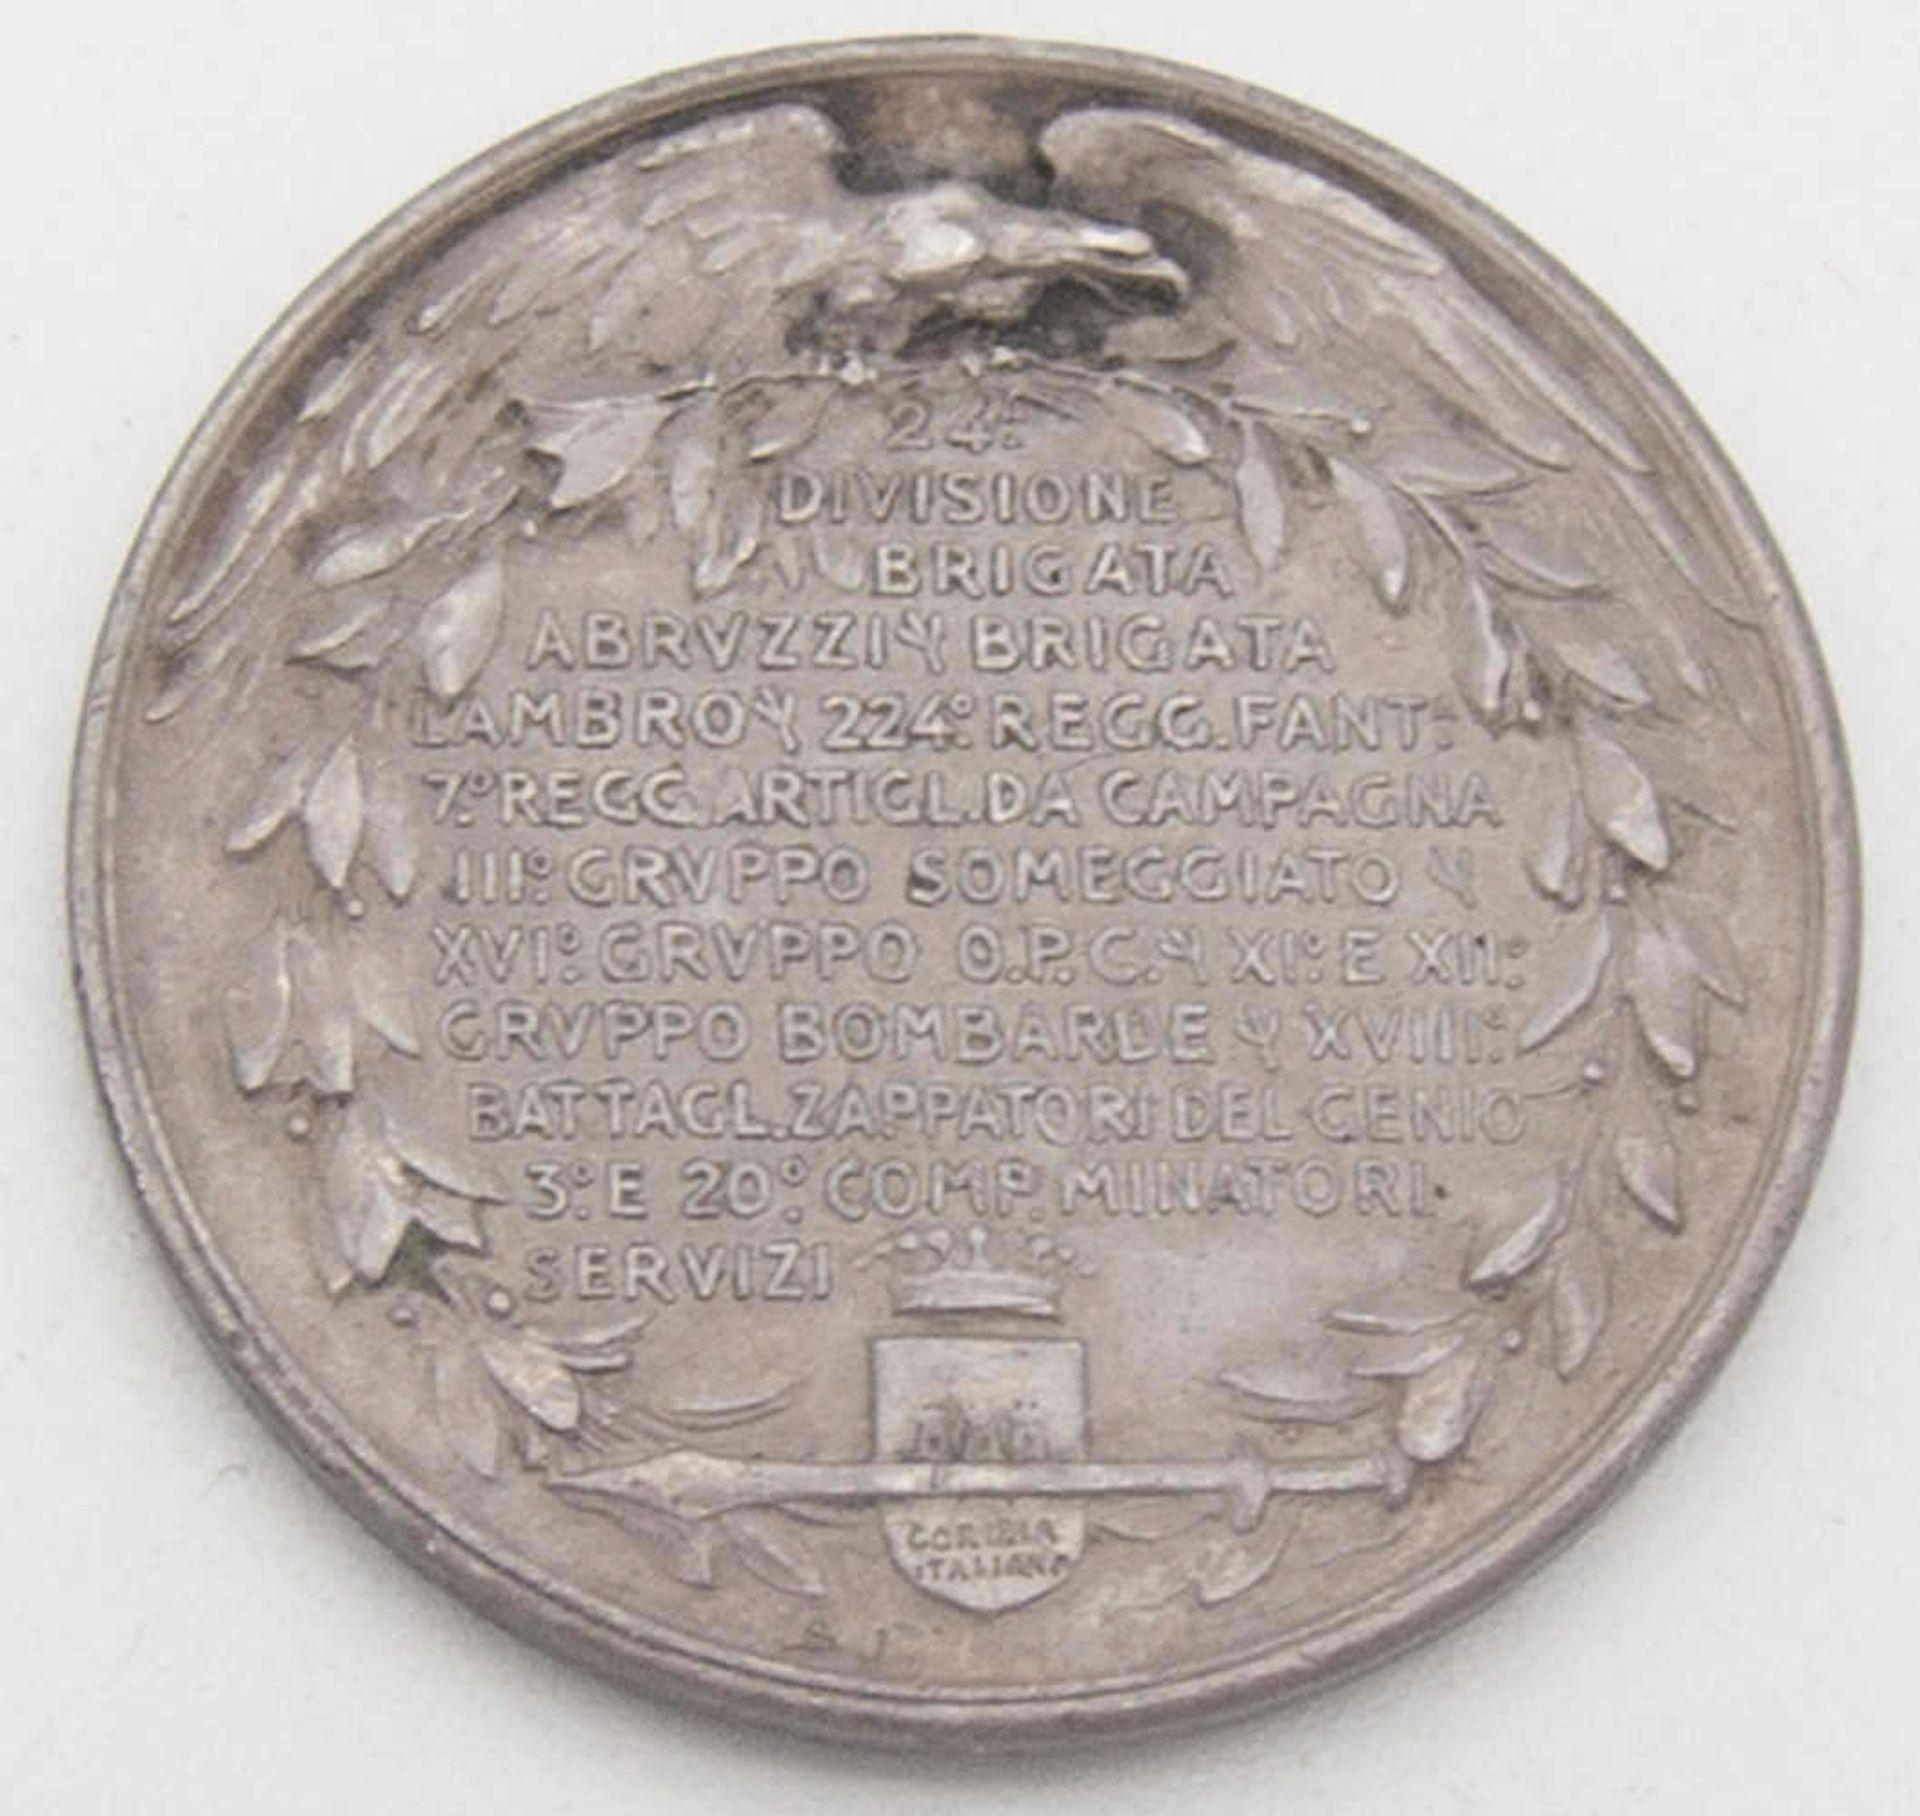 Italien 1916, Medaille von B. Castellucci zur Einnahme von Gorizia am 8. August. Zwölf Zeilen - Bild 2 aus 2